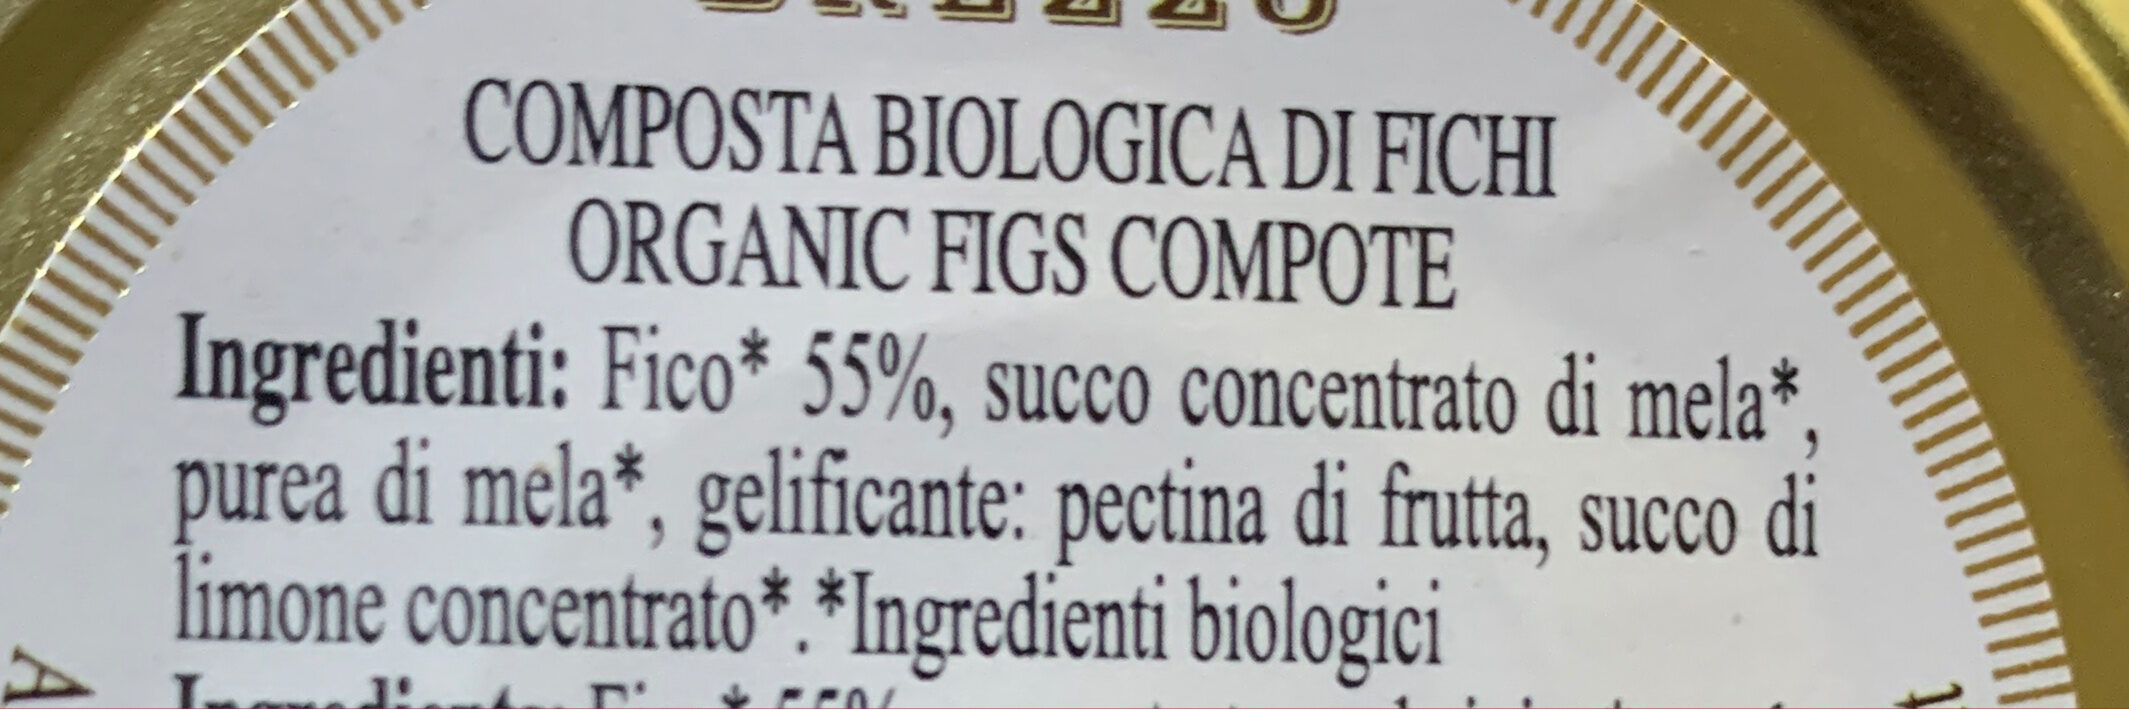 Fichi composta biologica - Ingredienti